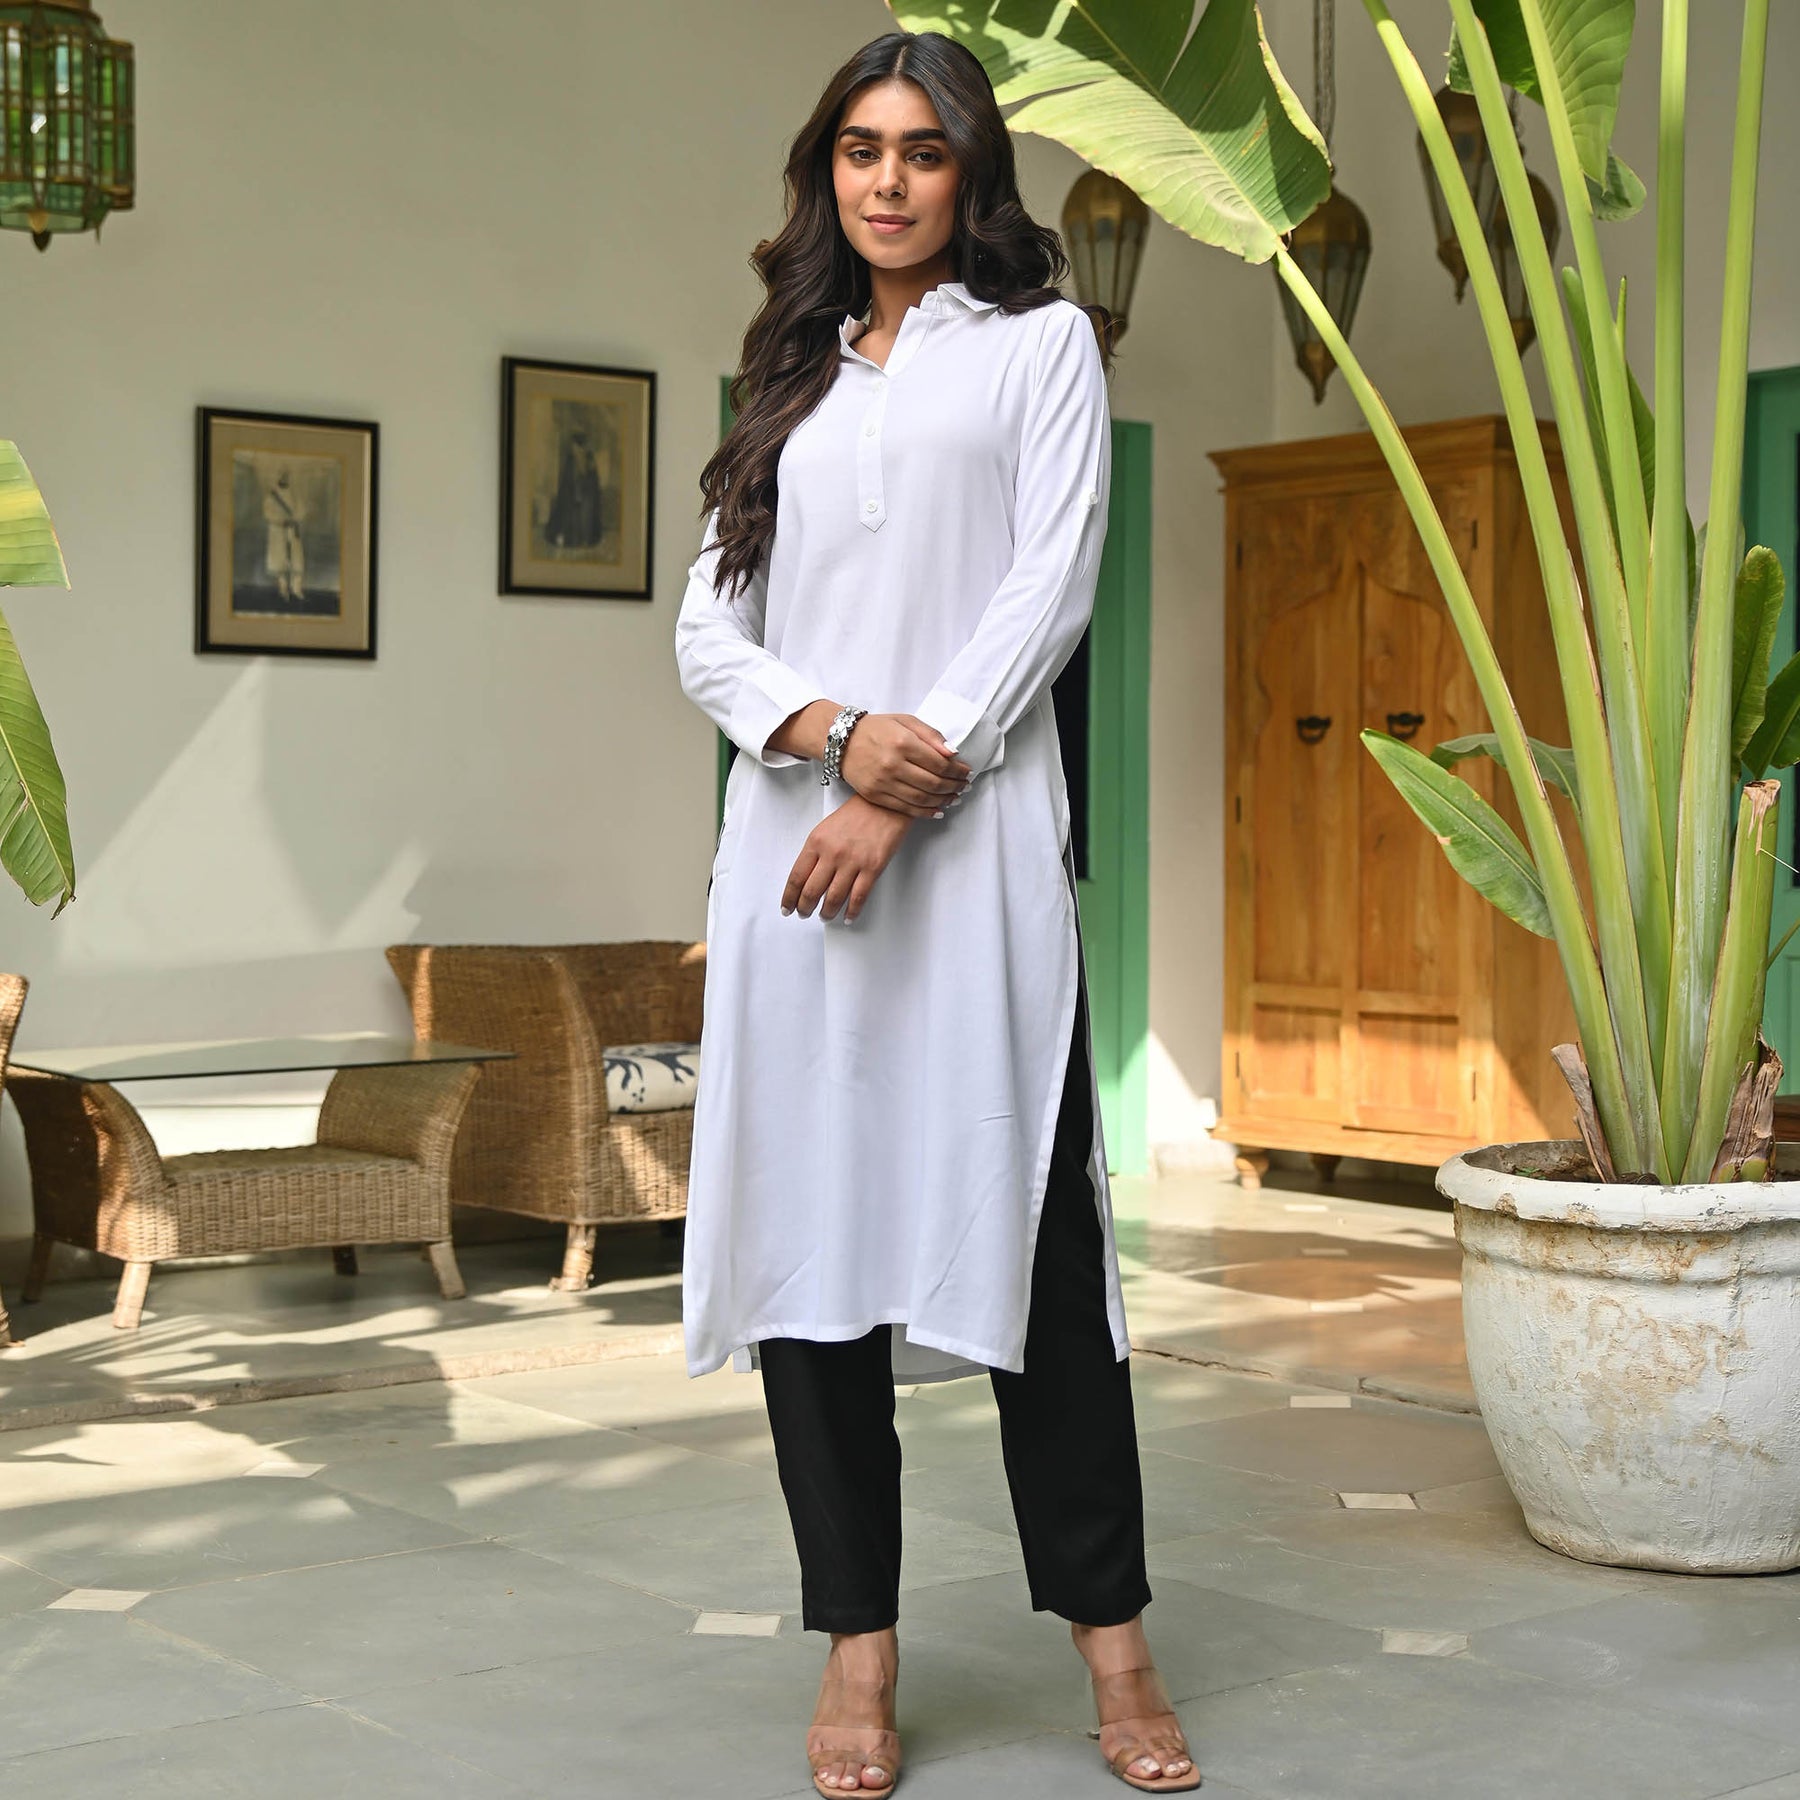 chikenkari white kurti pant set dm to order price:-₹750/-free shipping  whatsAp to order 9691911854 | Bollywood style dress, Indian dresses, Indian  fashion